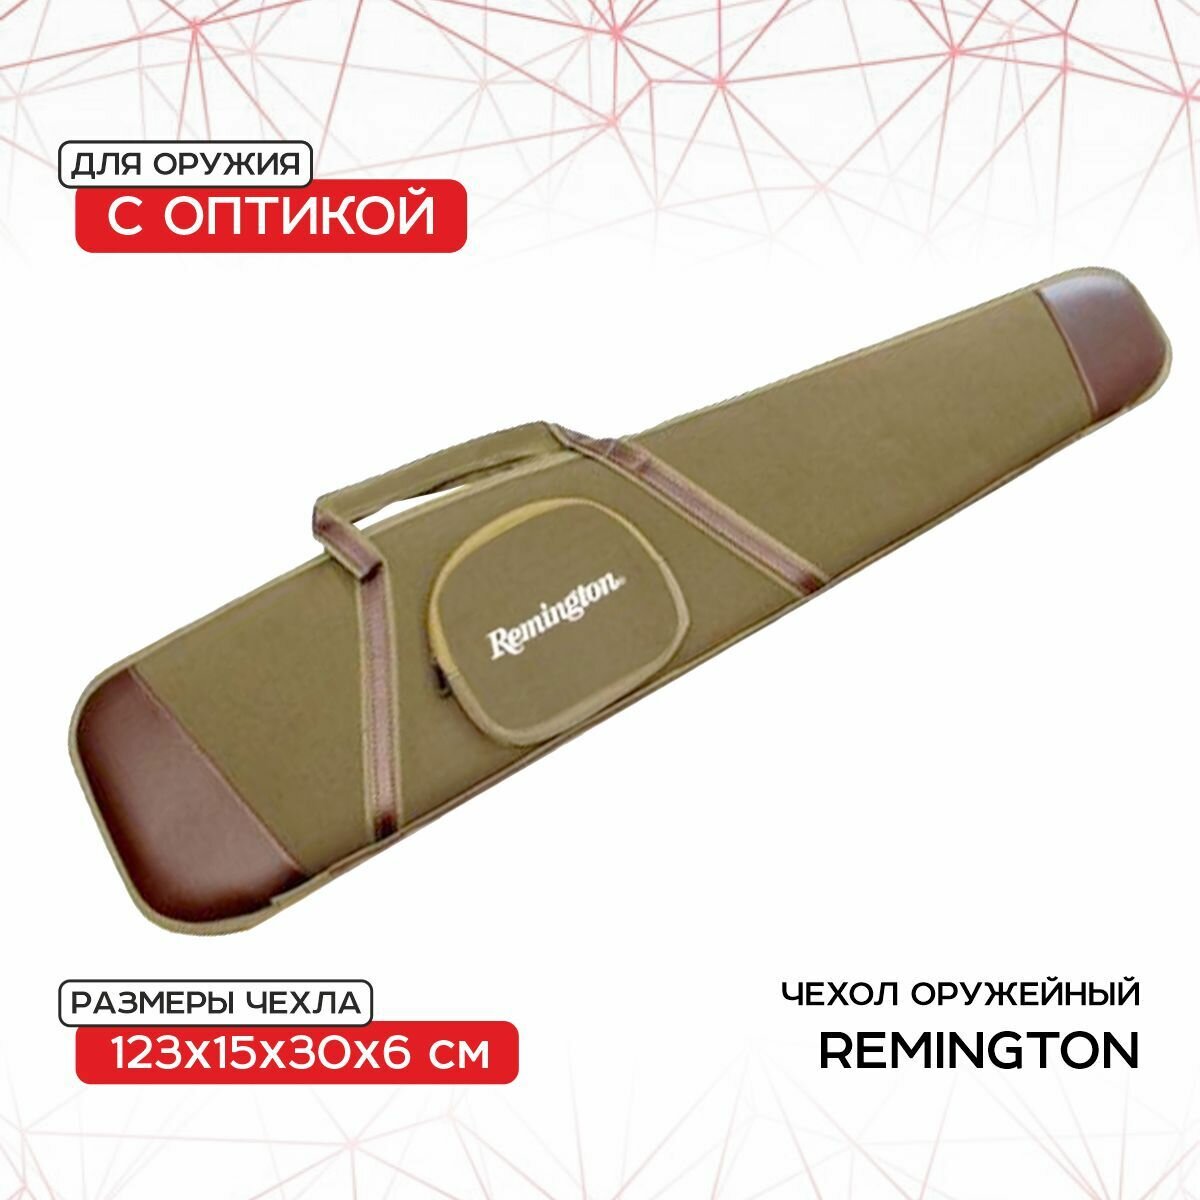 Чехол оружейный Remington с оптикой 123x15x30x6 (зеленый) GB-9050A123